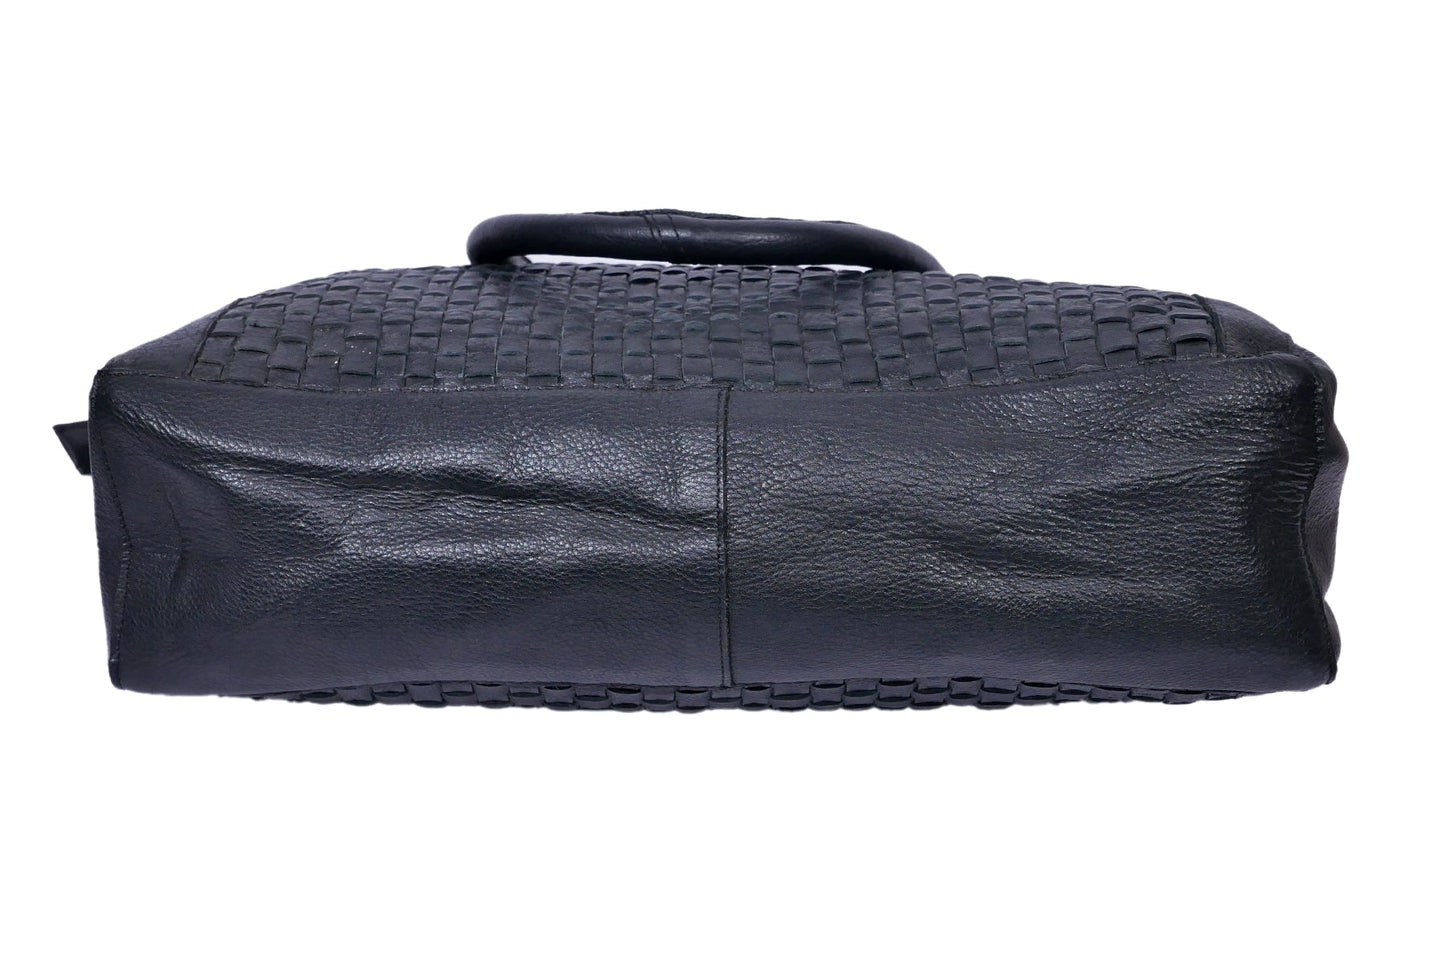 Luxury Noir: Black Leather Shoulder Bag. - CELTICINDIA